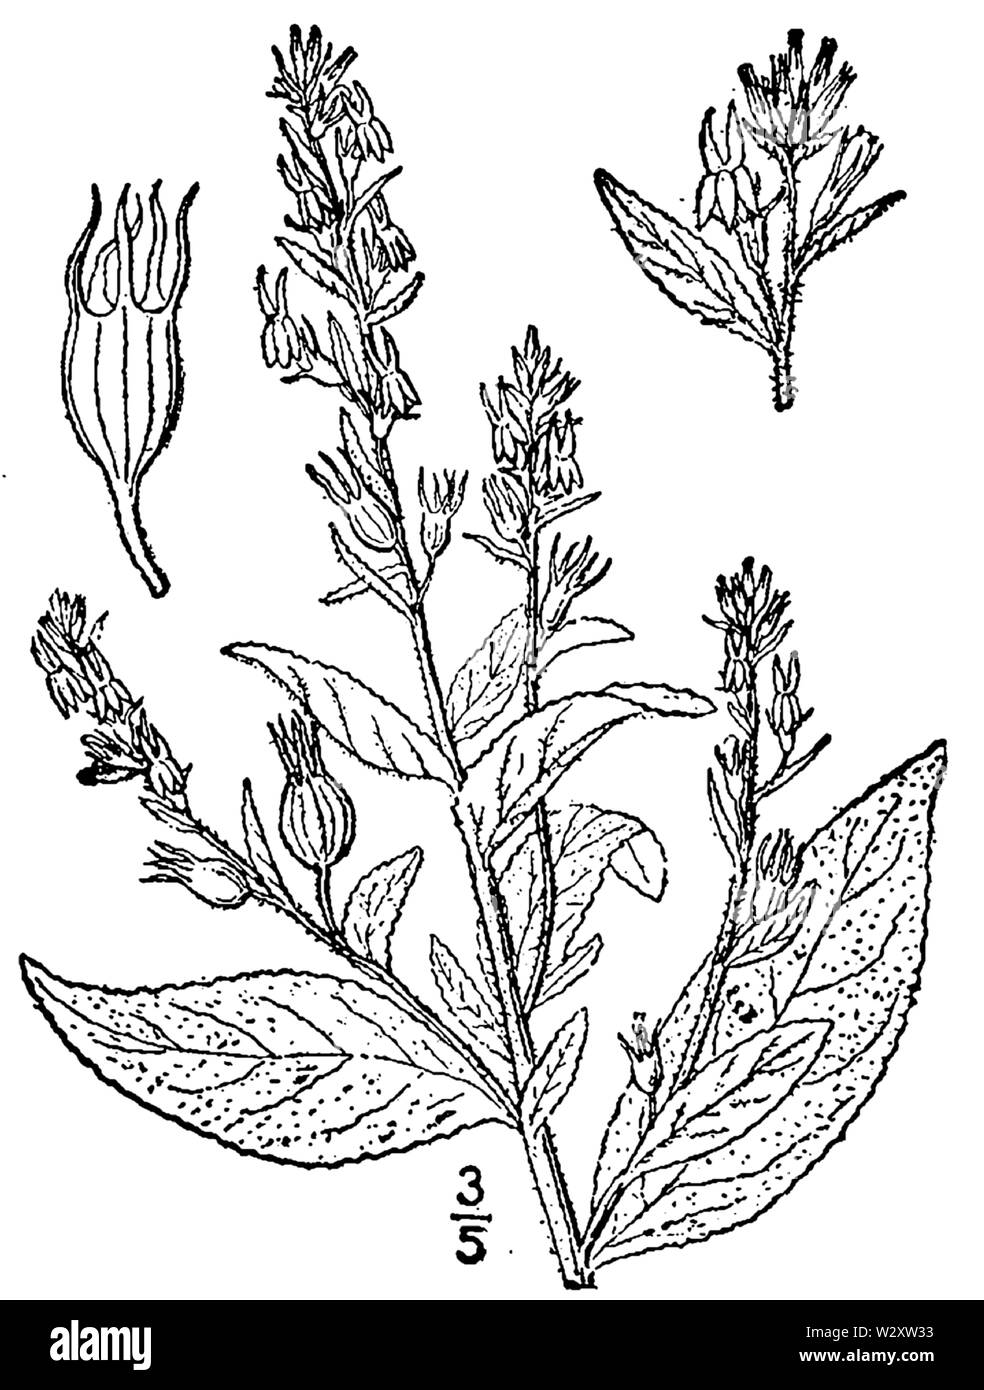 Botanical illustration of Lobelia inflata from 1913. Stock Photo